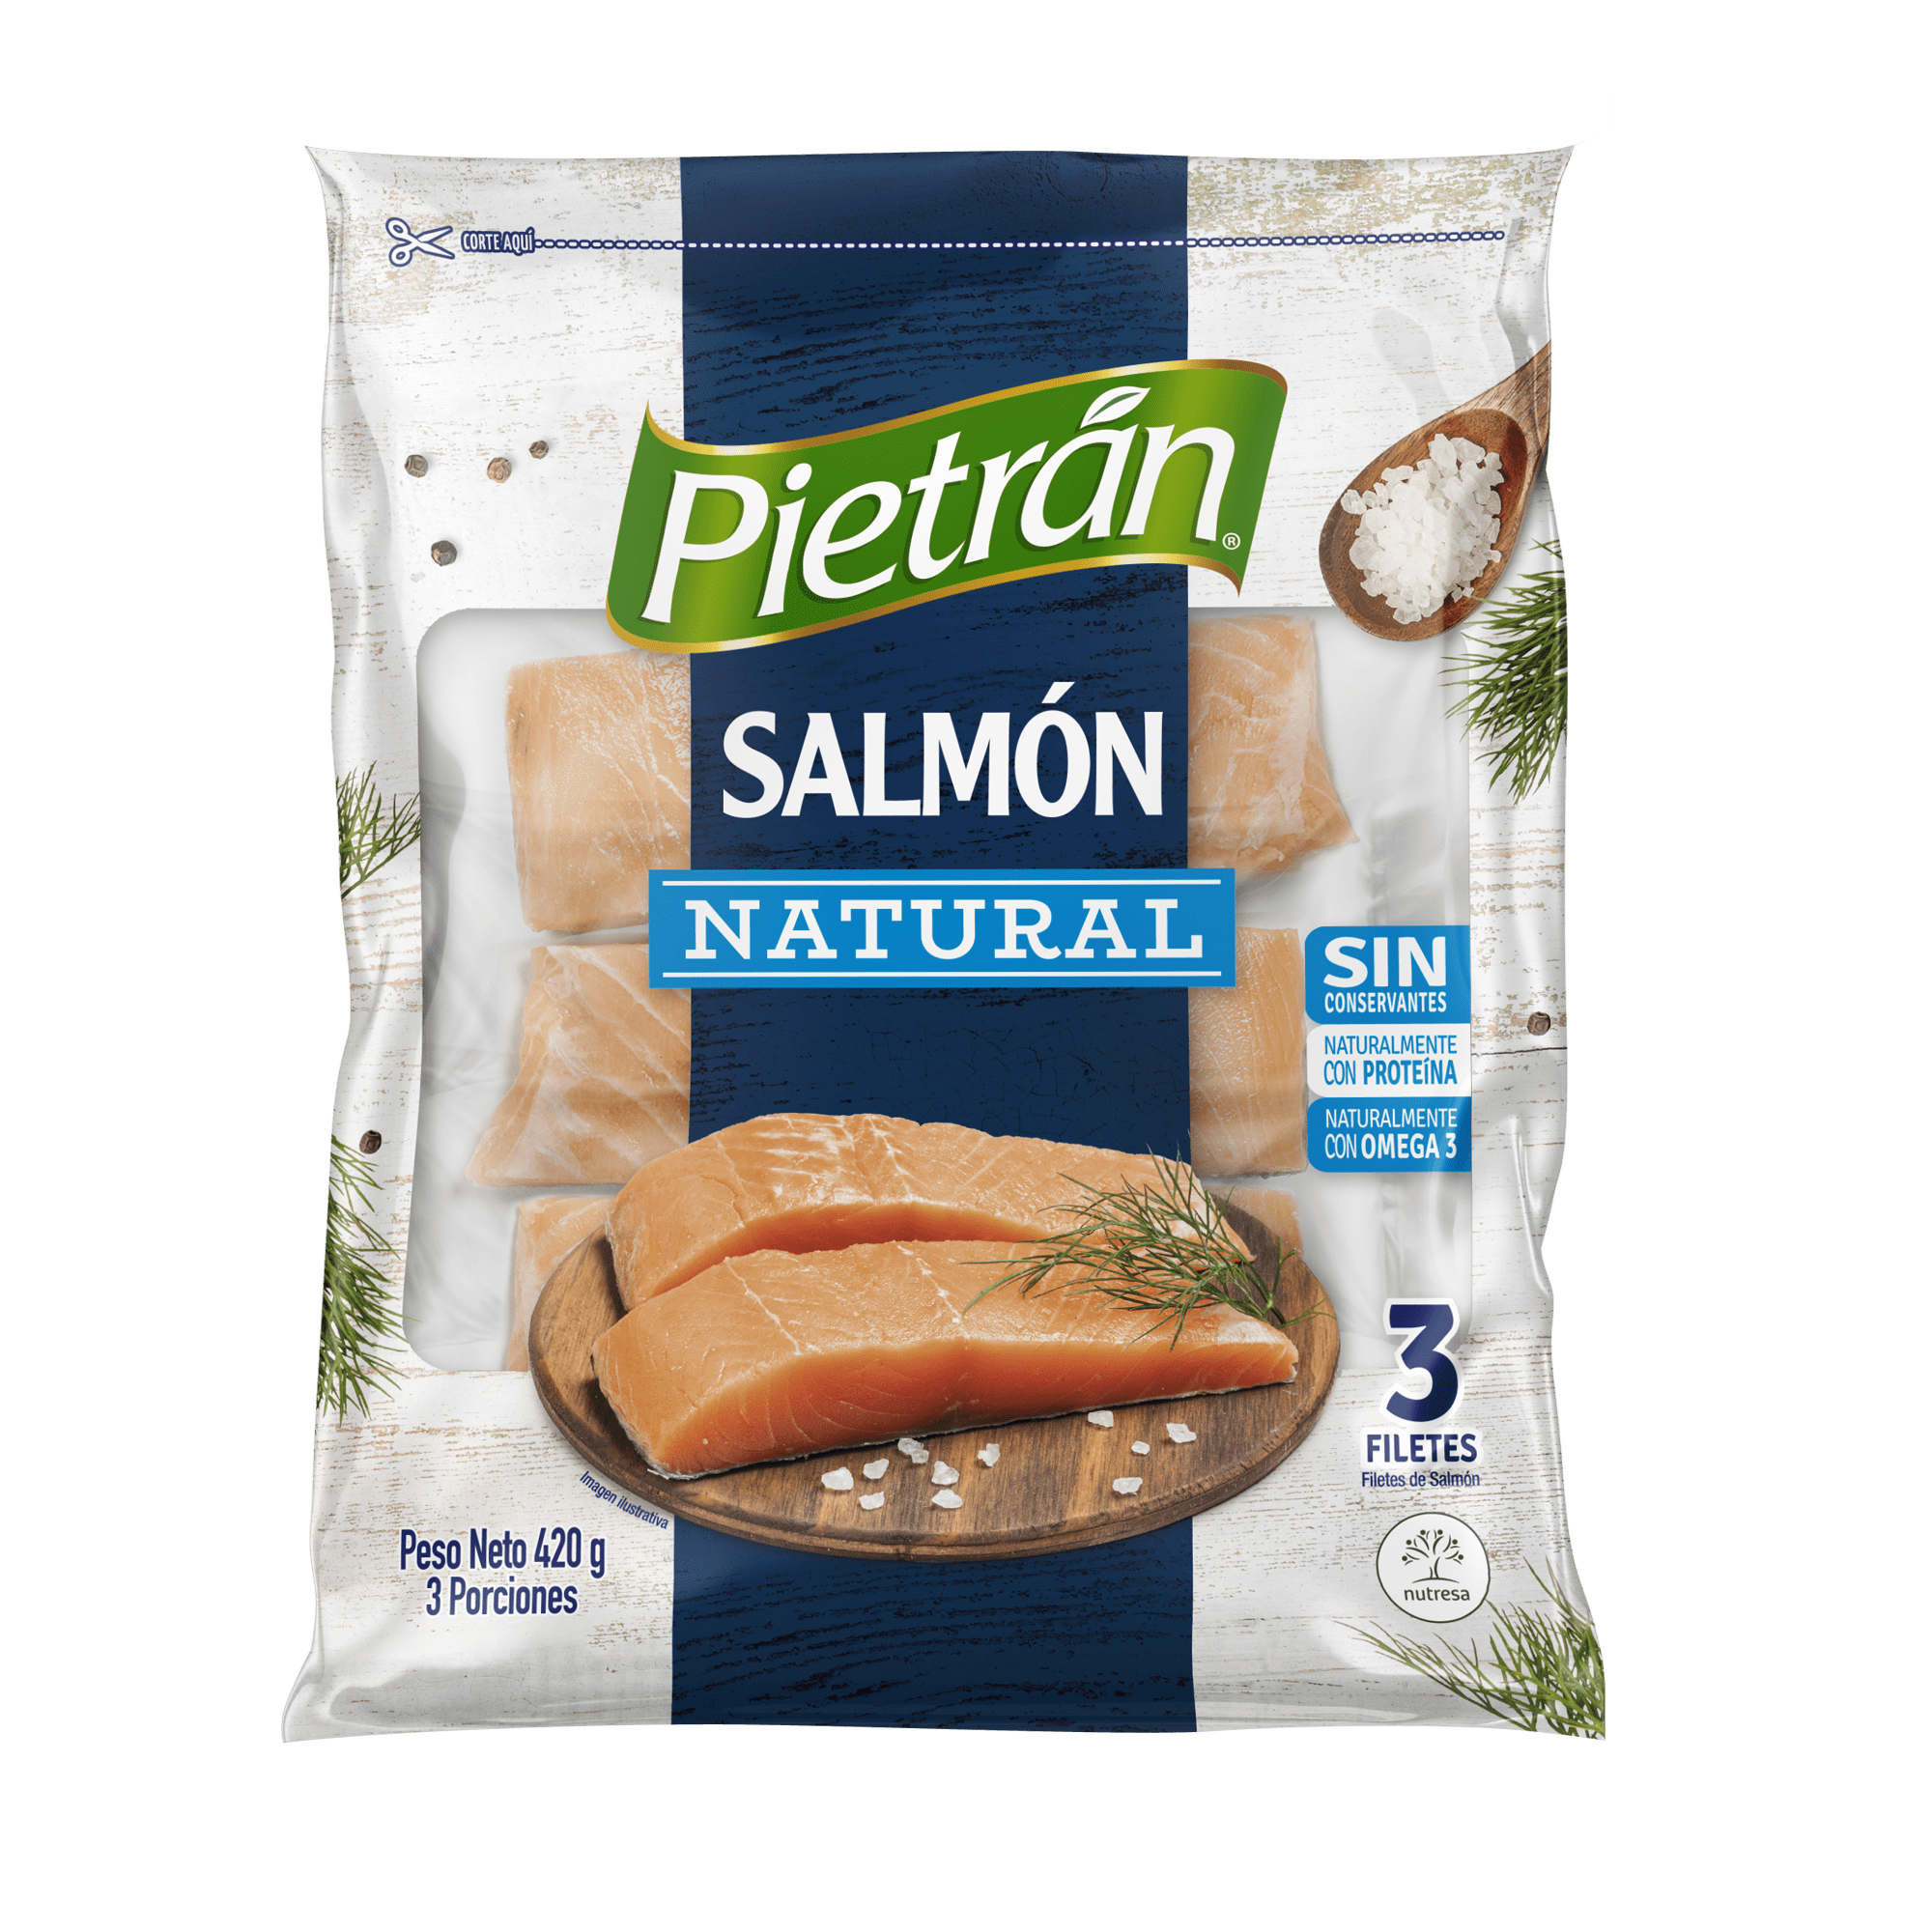 Salmon Pietran Natural 2